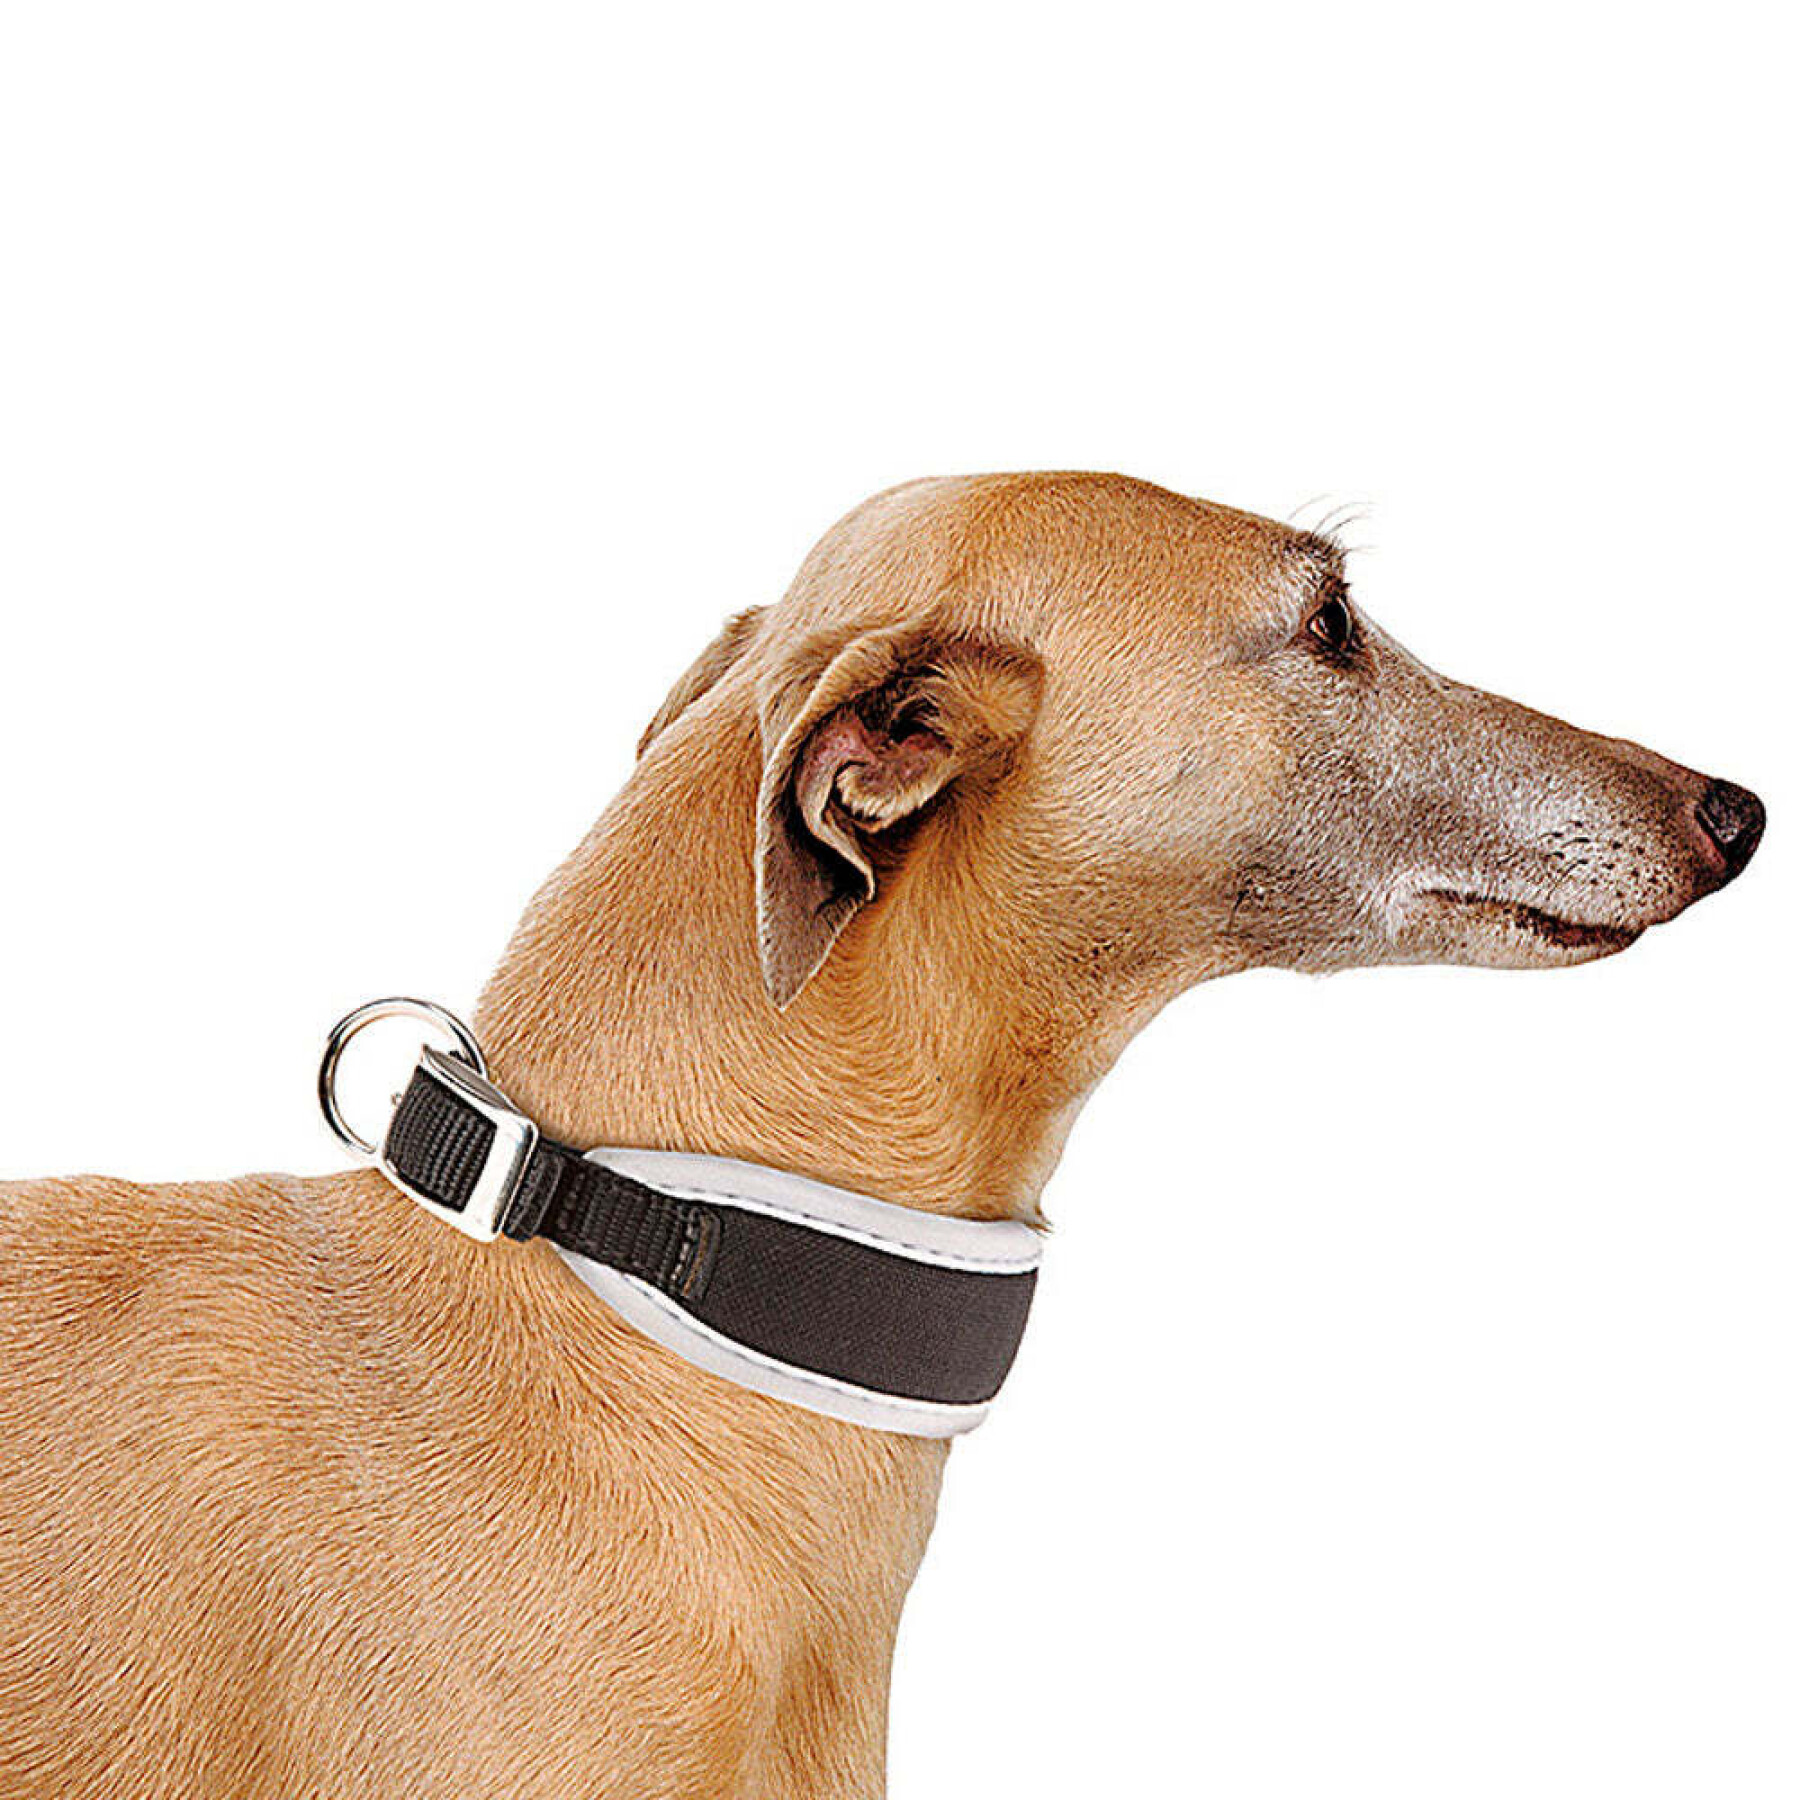 Collar para perro Ferplast Ergocomfort CW25/46